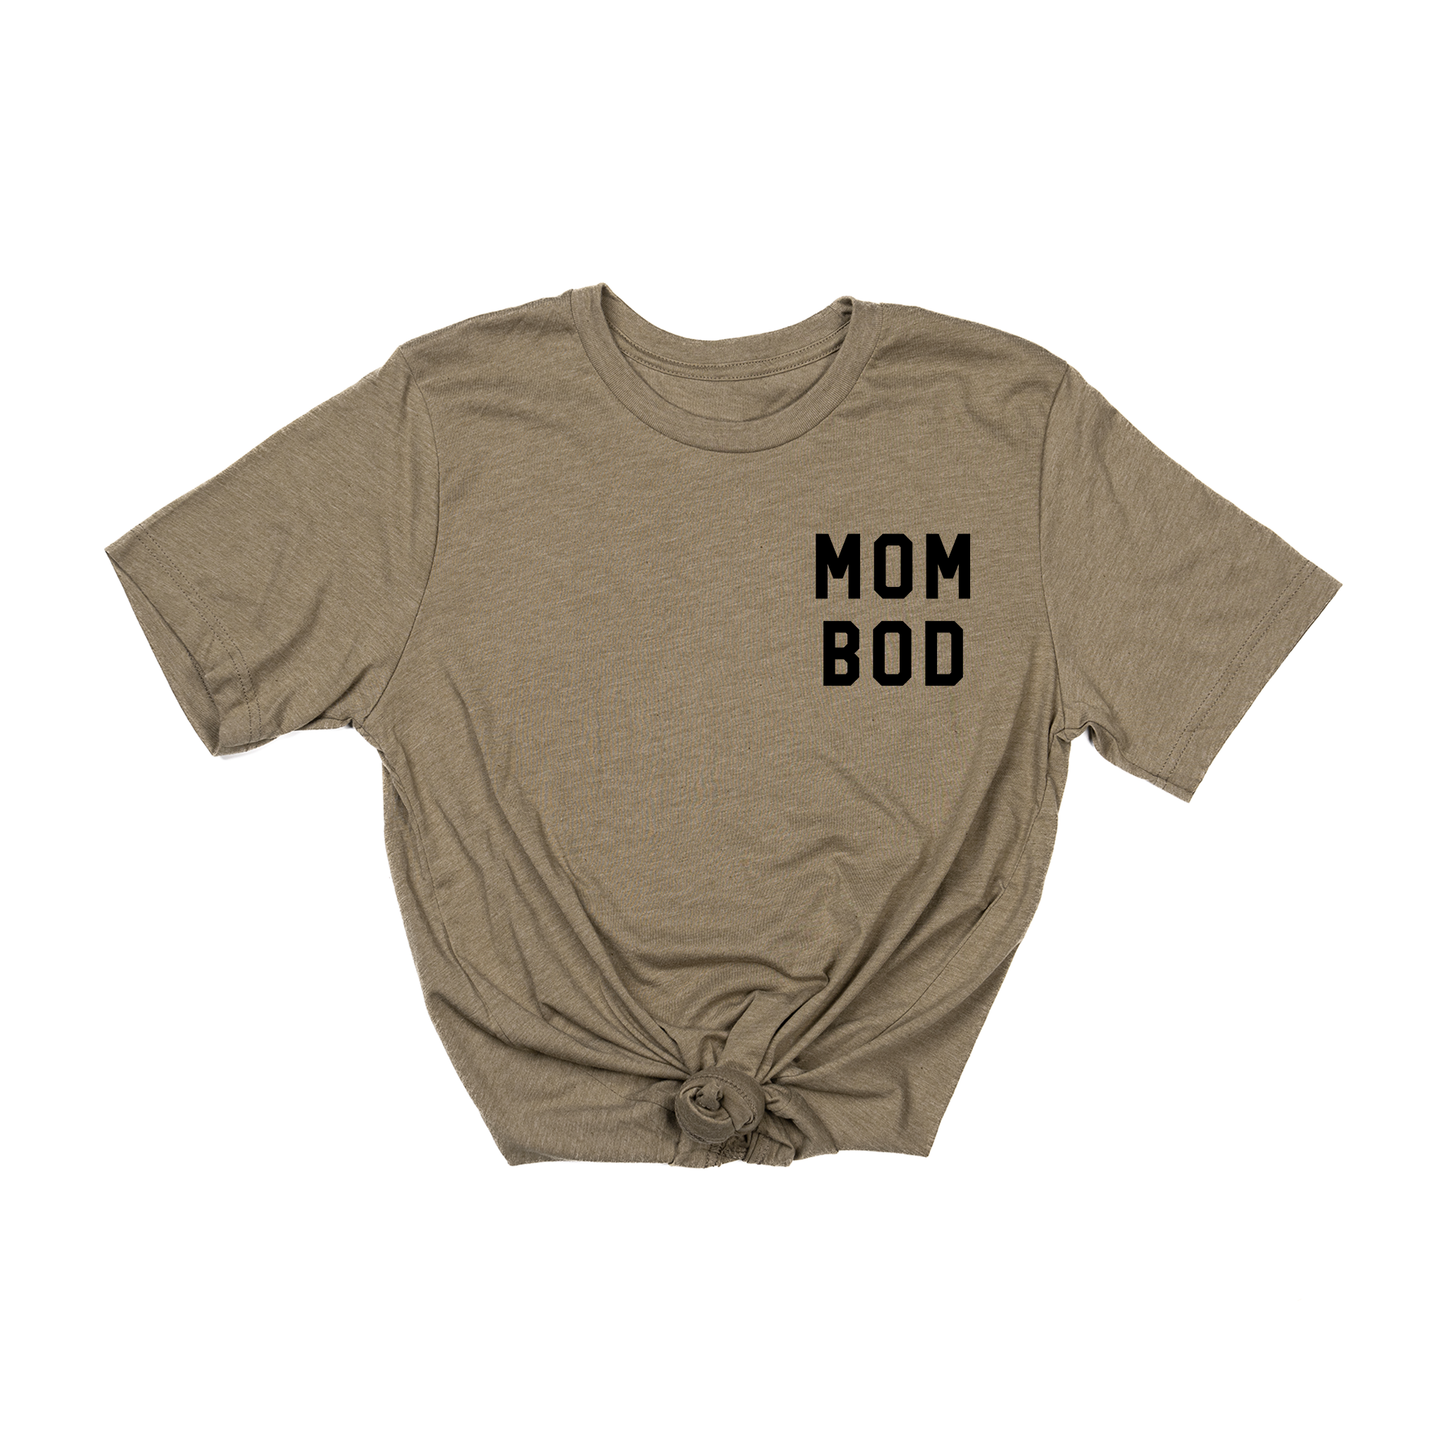 Mom Bod (Pocket, Black) - Tee (Olive)